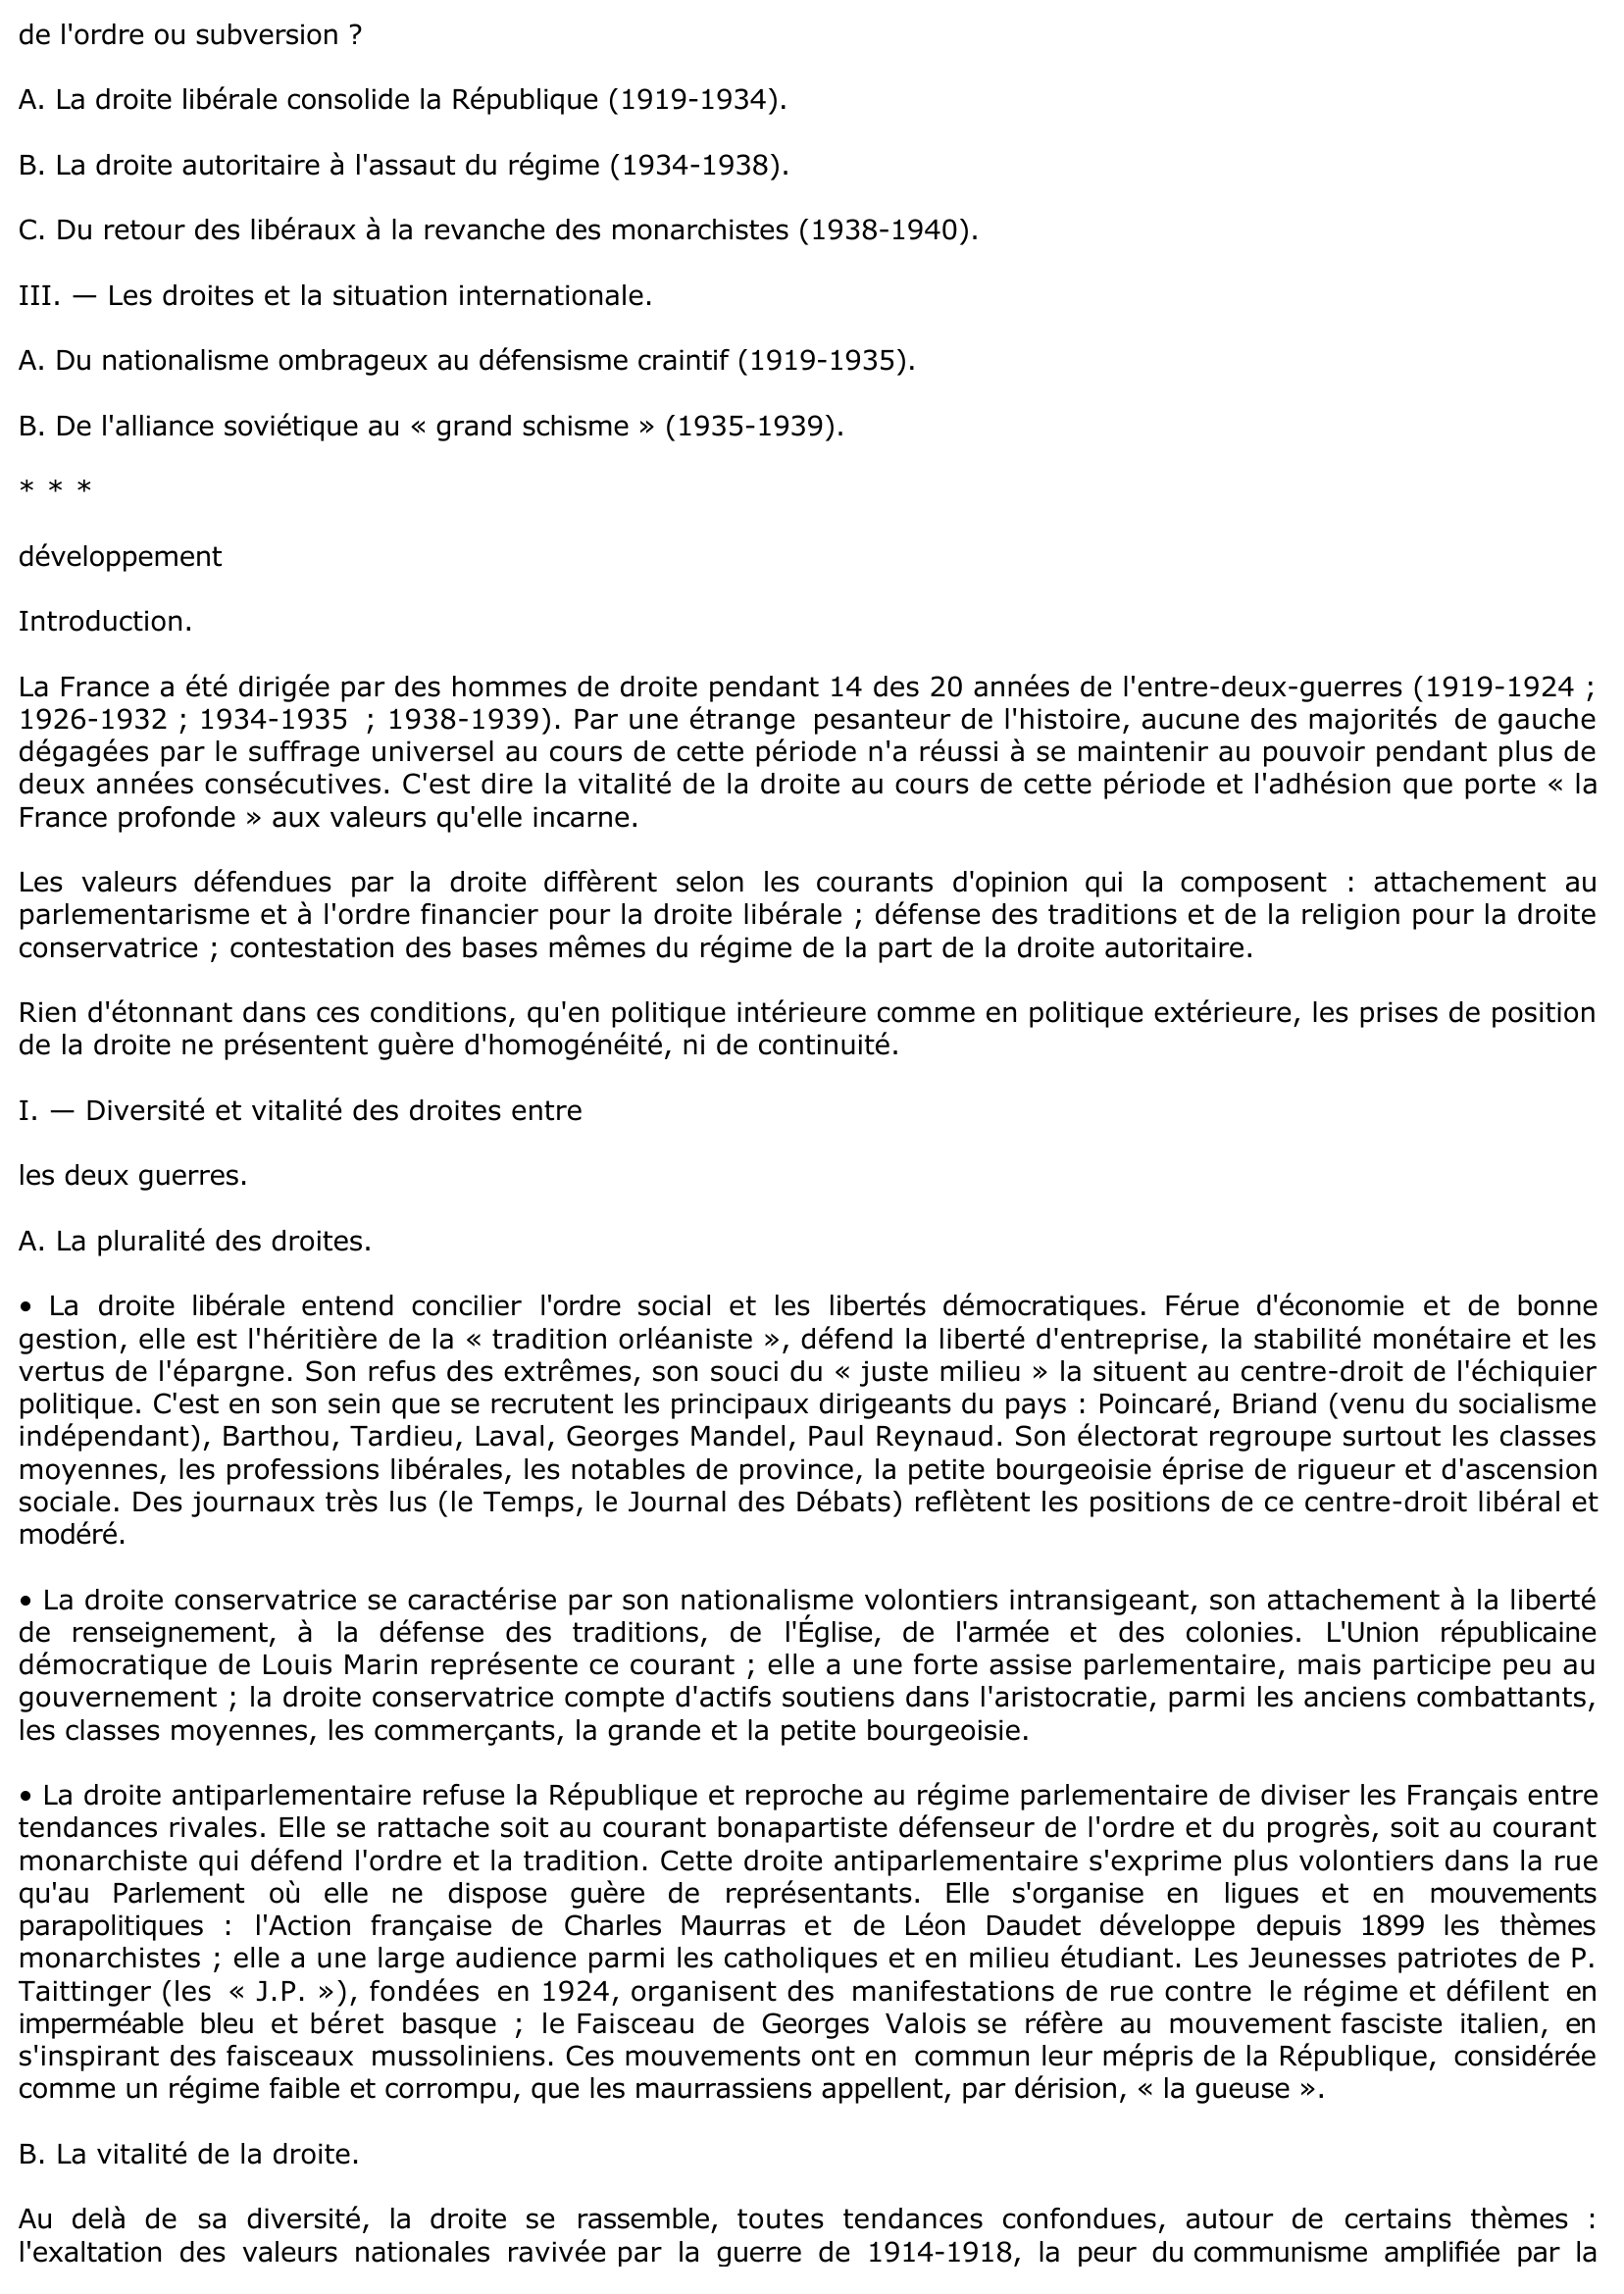 Prévisualisation du document LA DROITE EN FRANCE DE 1919 A 1939 (Histoire)